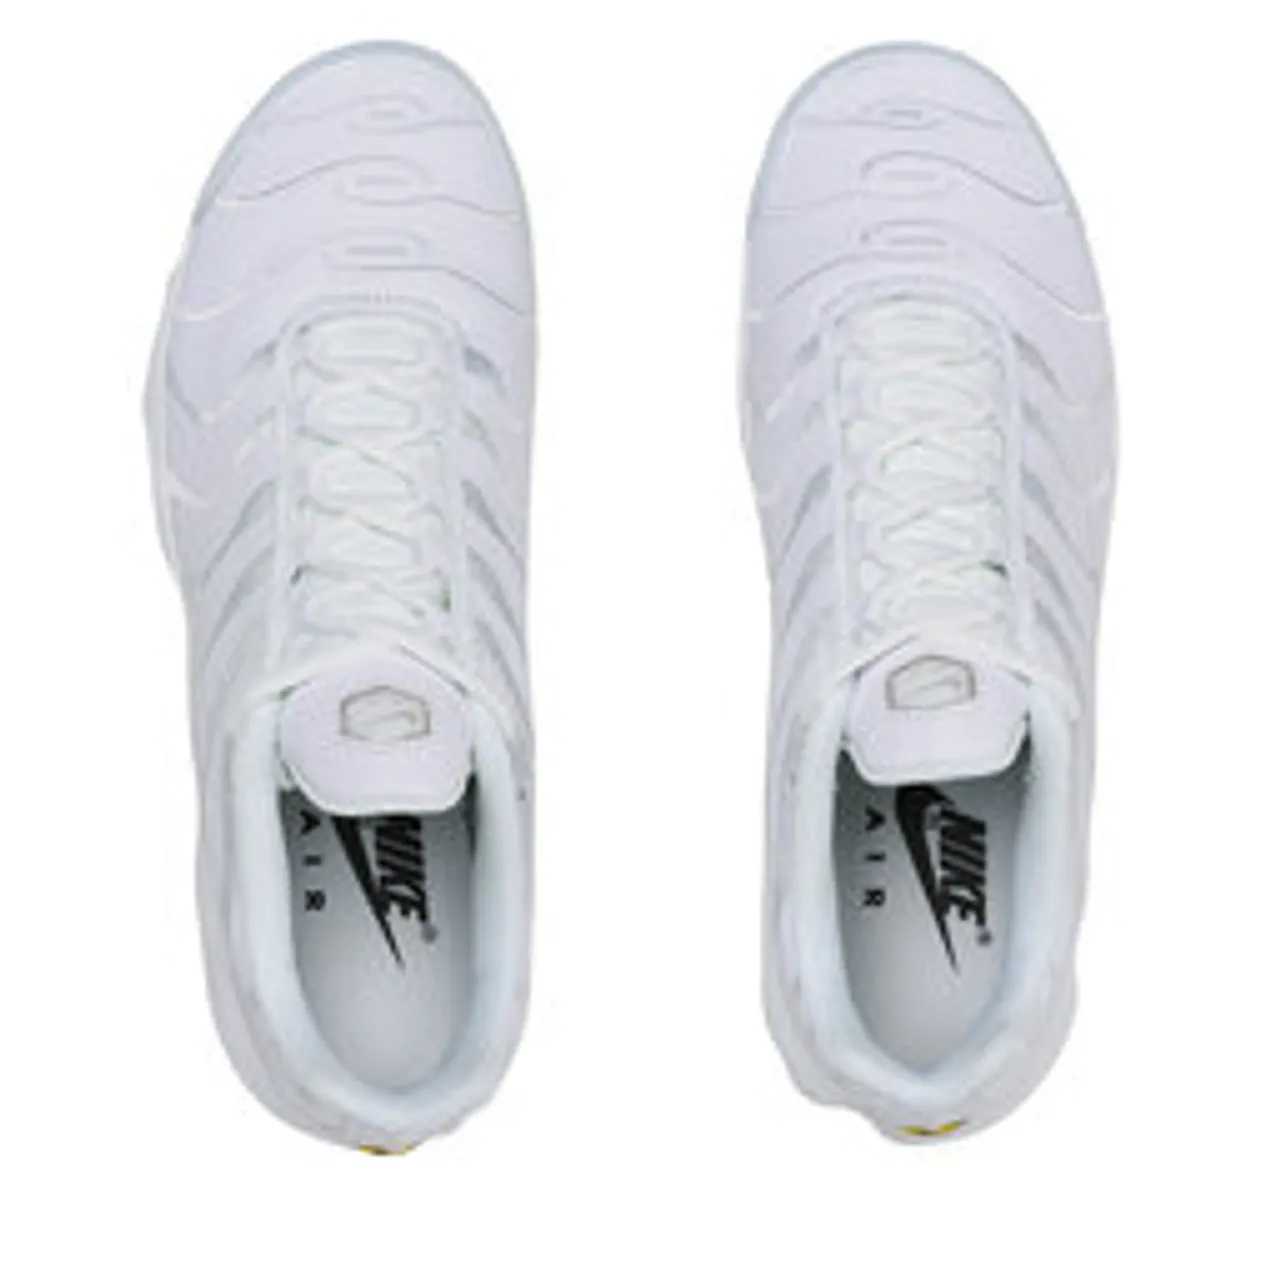 Sneakers Nike Air Max Plus AJ2029 100 Weiß